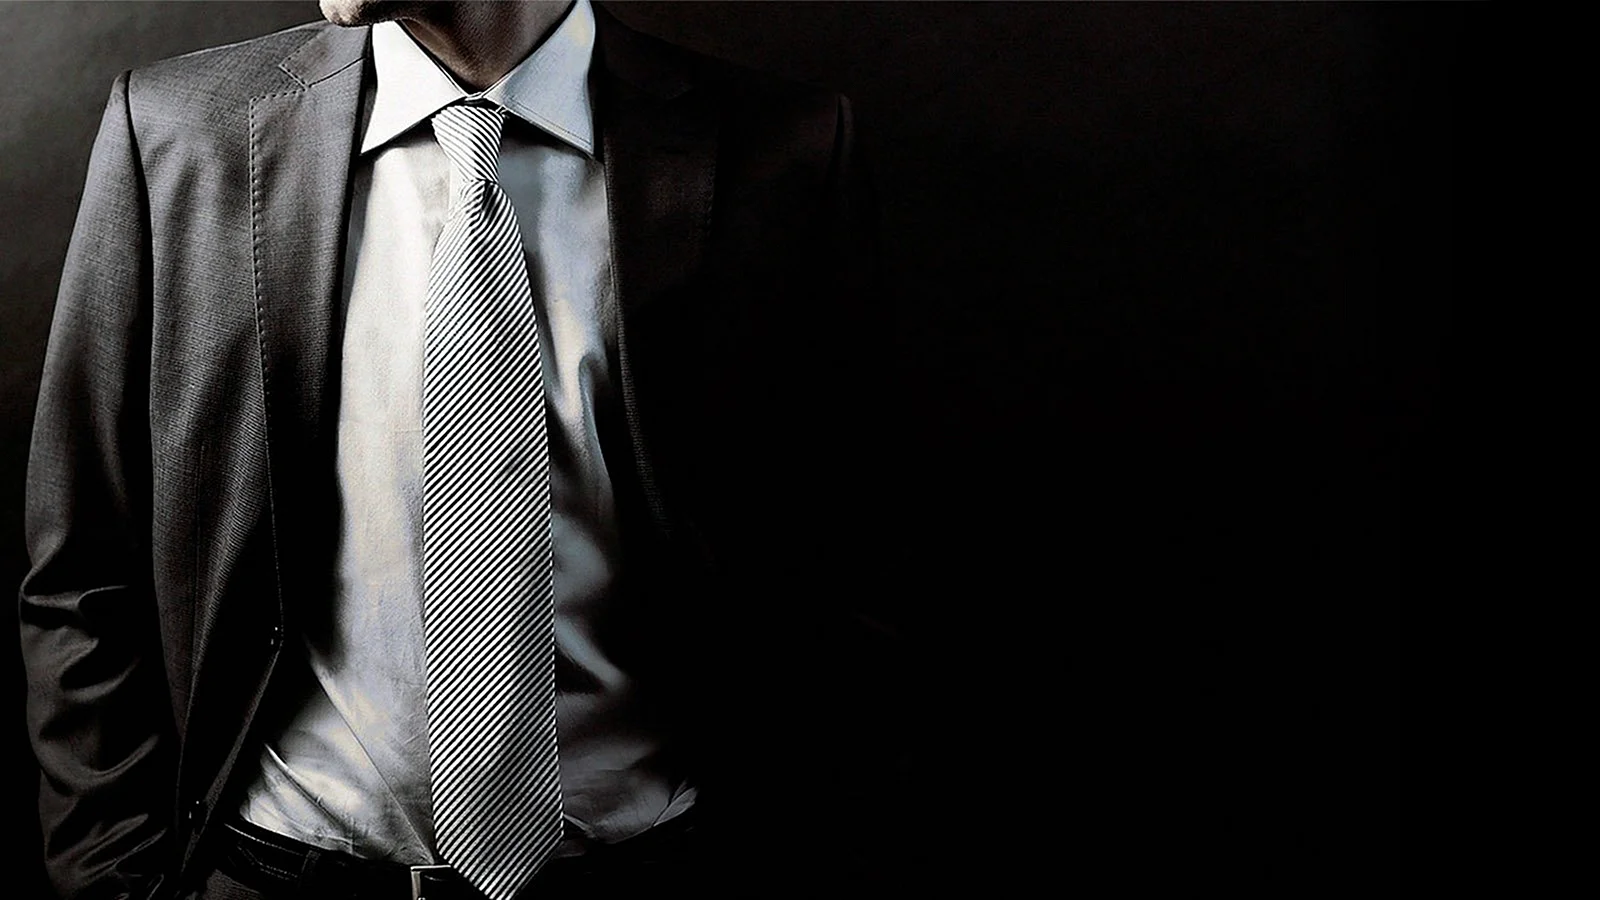 Мужчина в галстуке